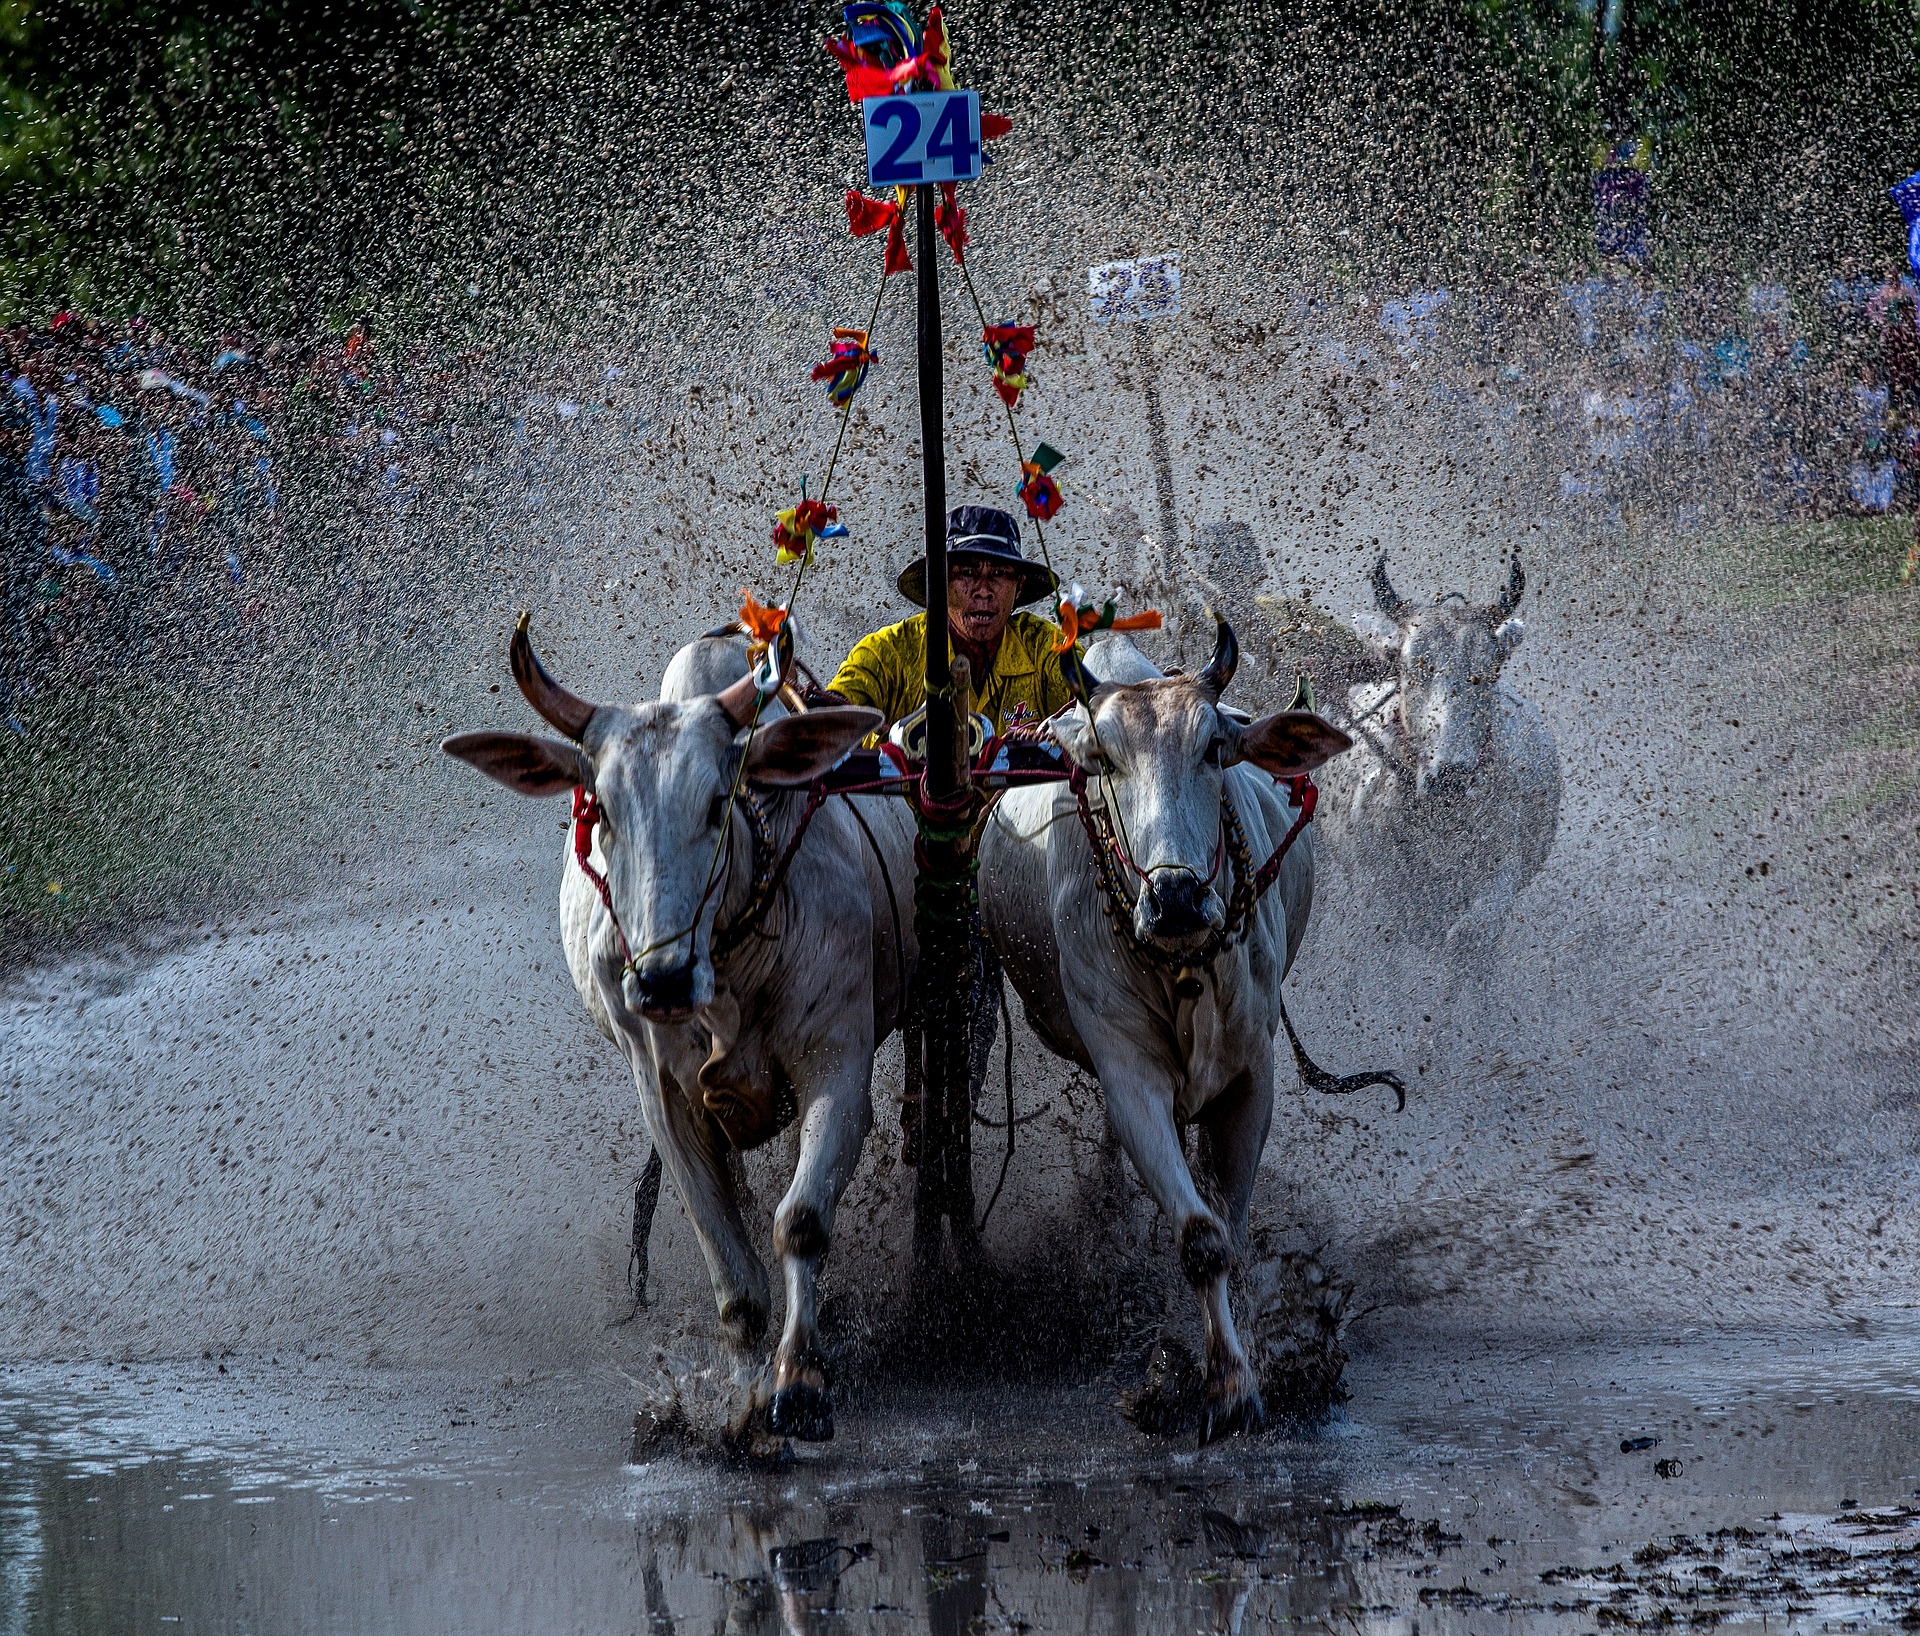 Kuhrennen-Festival in An Giang, Vietnam.